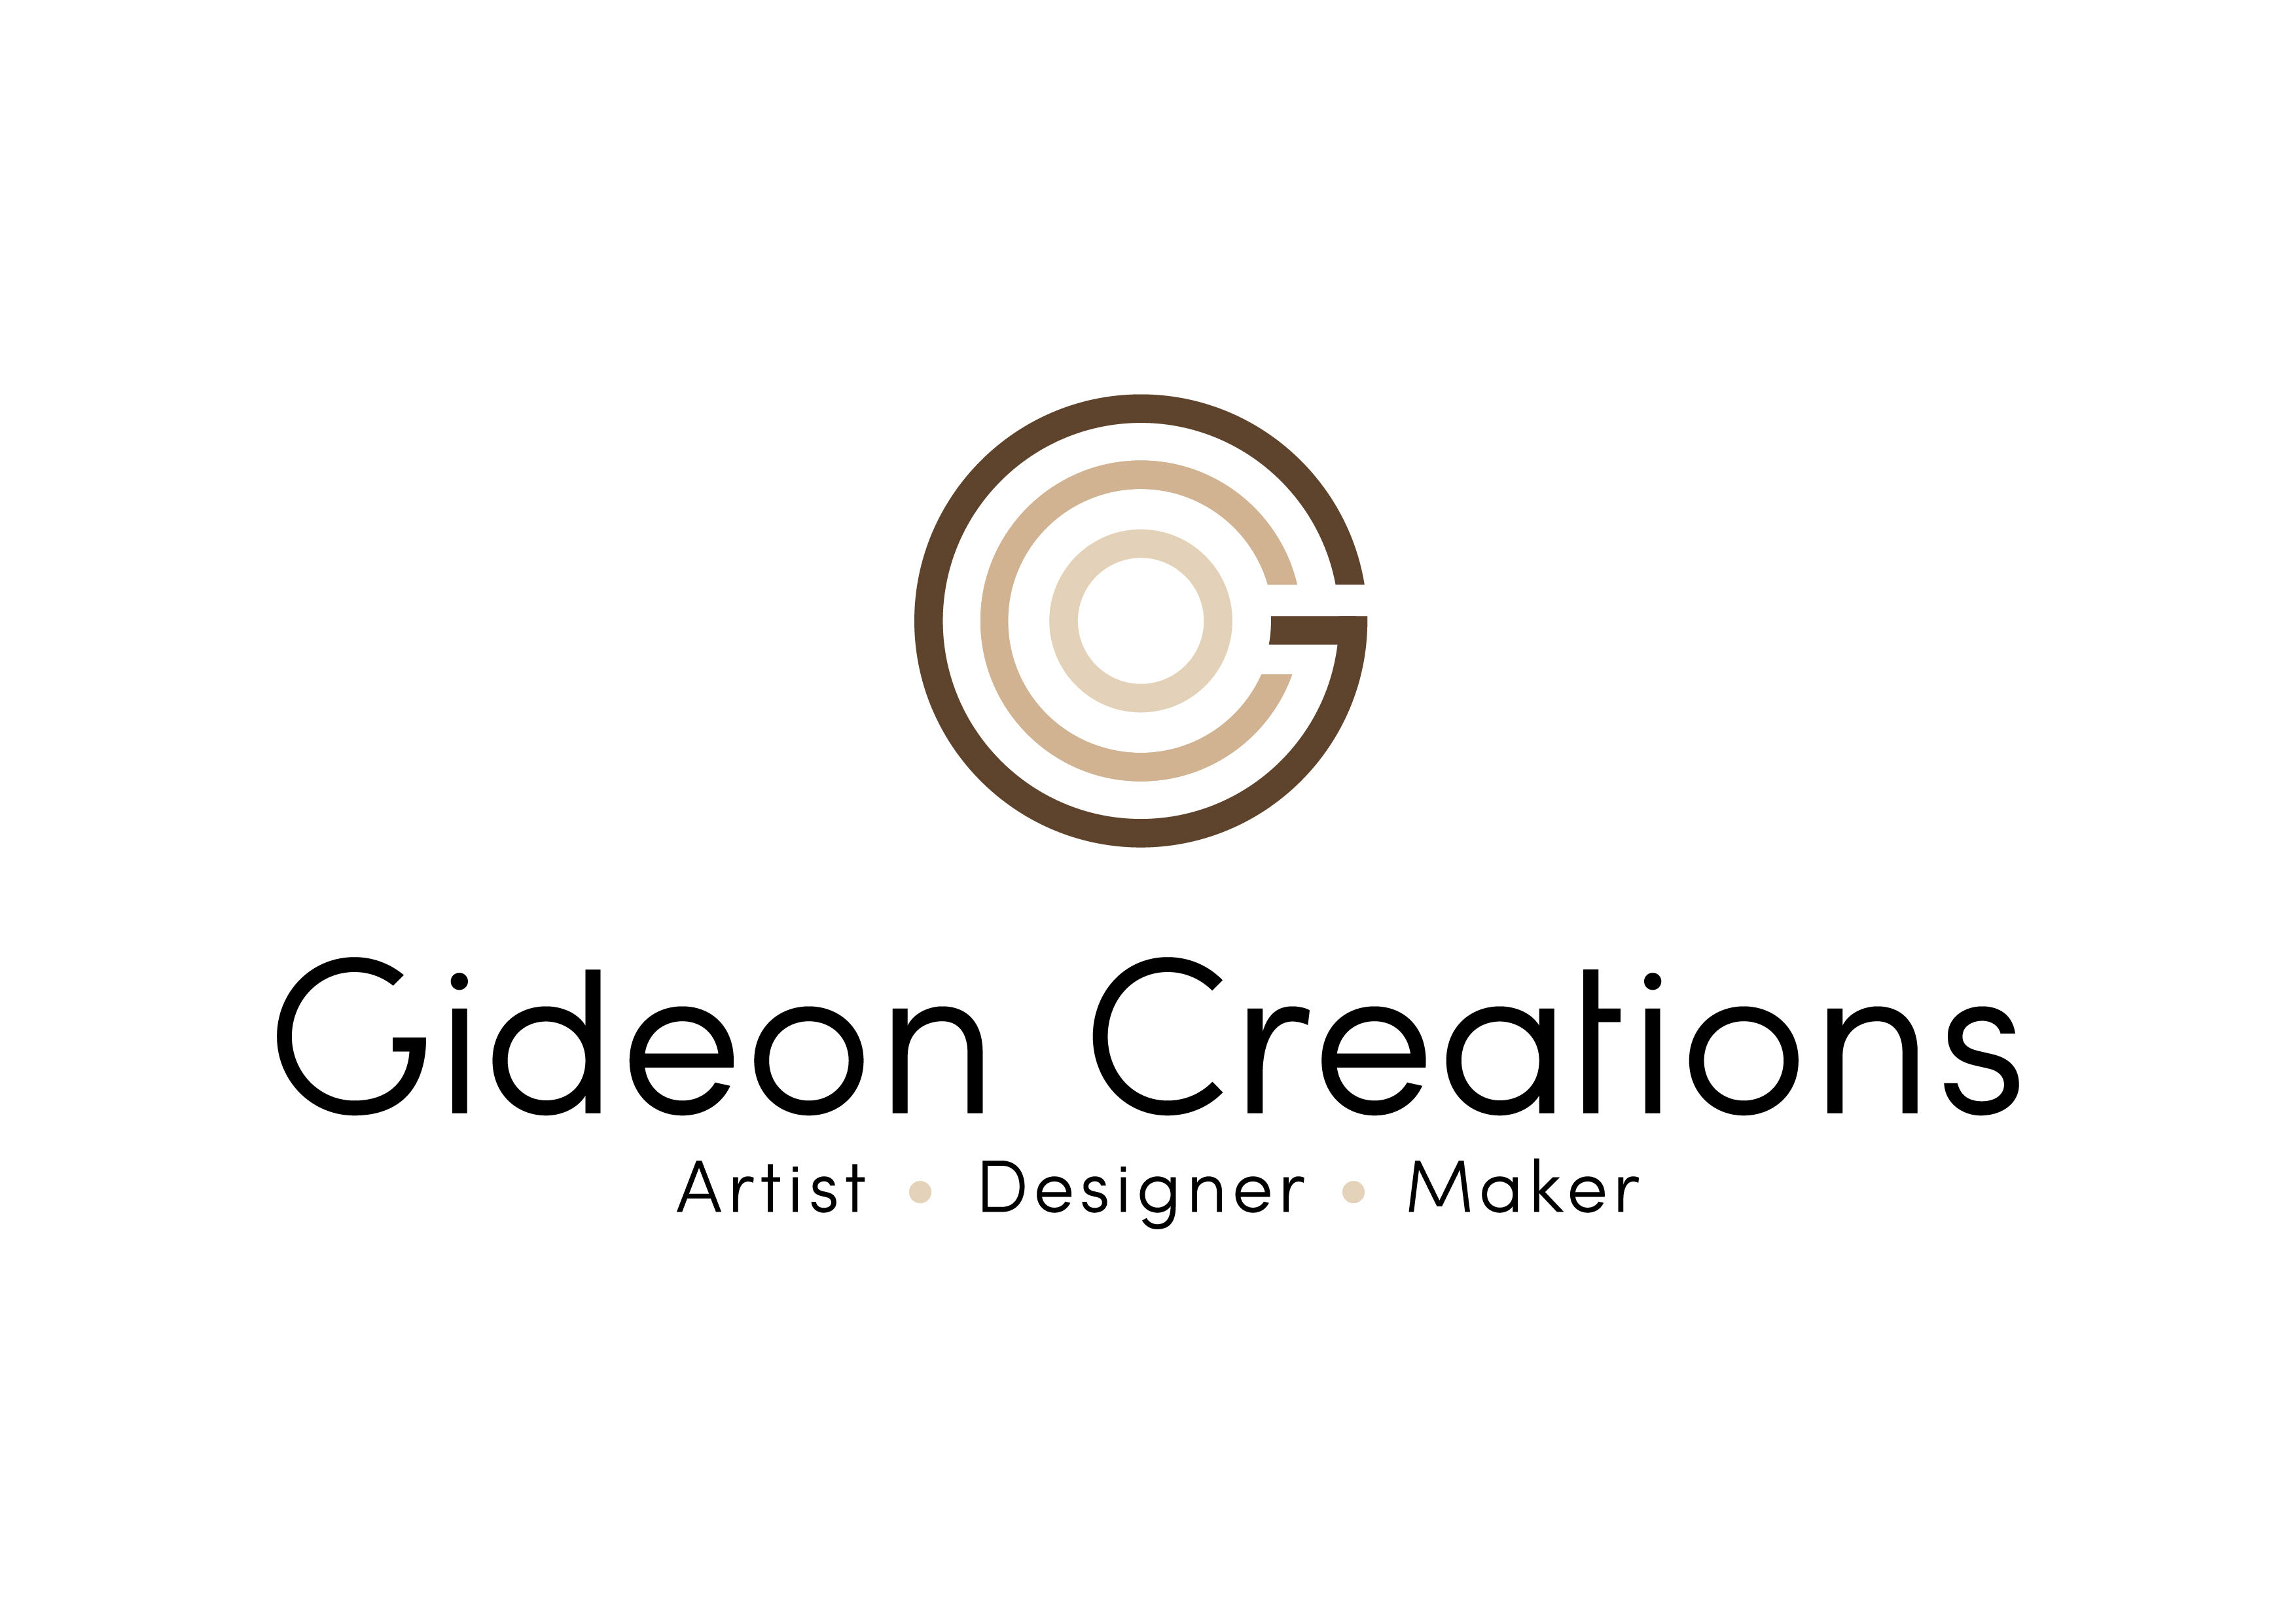 Gideon Creations